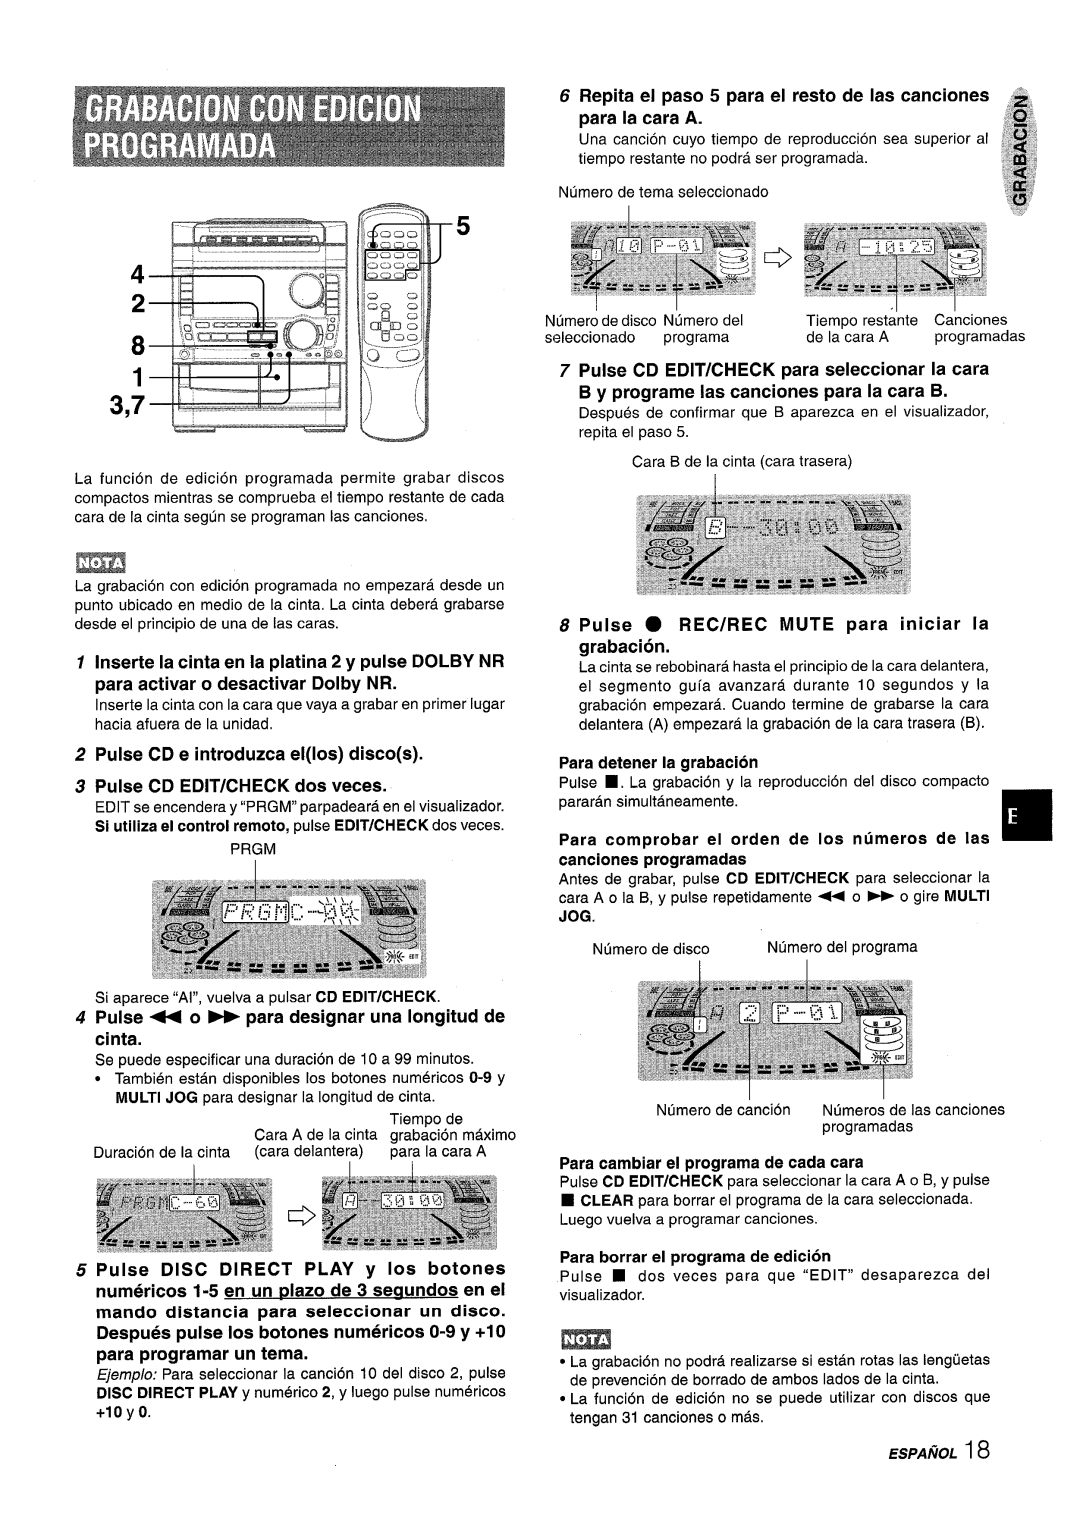 Sony NSX-A959 manual ESfJAfiOL18, Pulse CD e introduzca ellos discos 3 Pulse CD EDIT/CHECK dos veces, para la cara A 